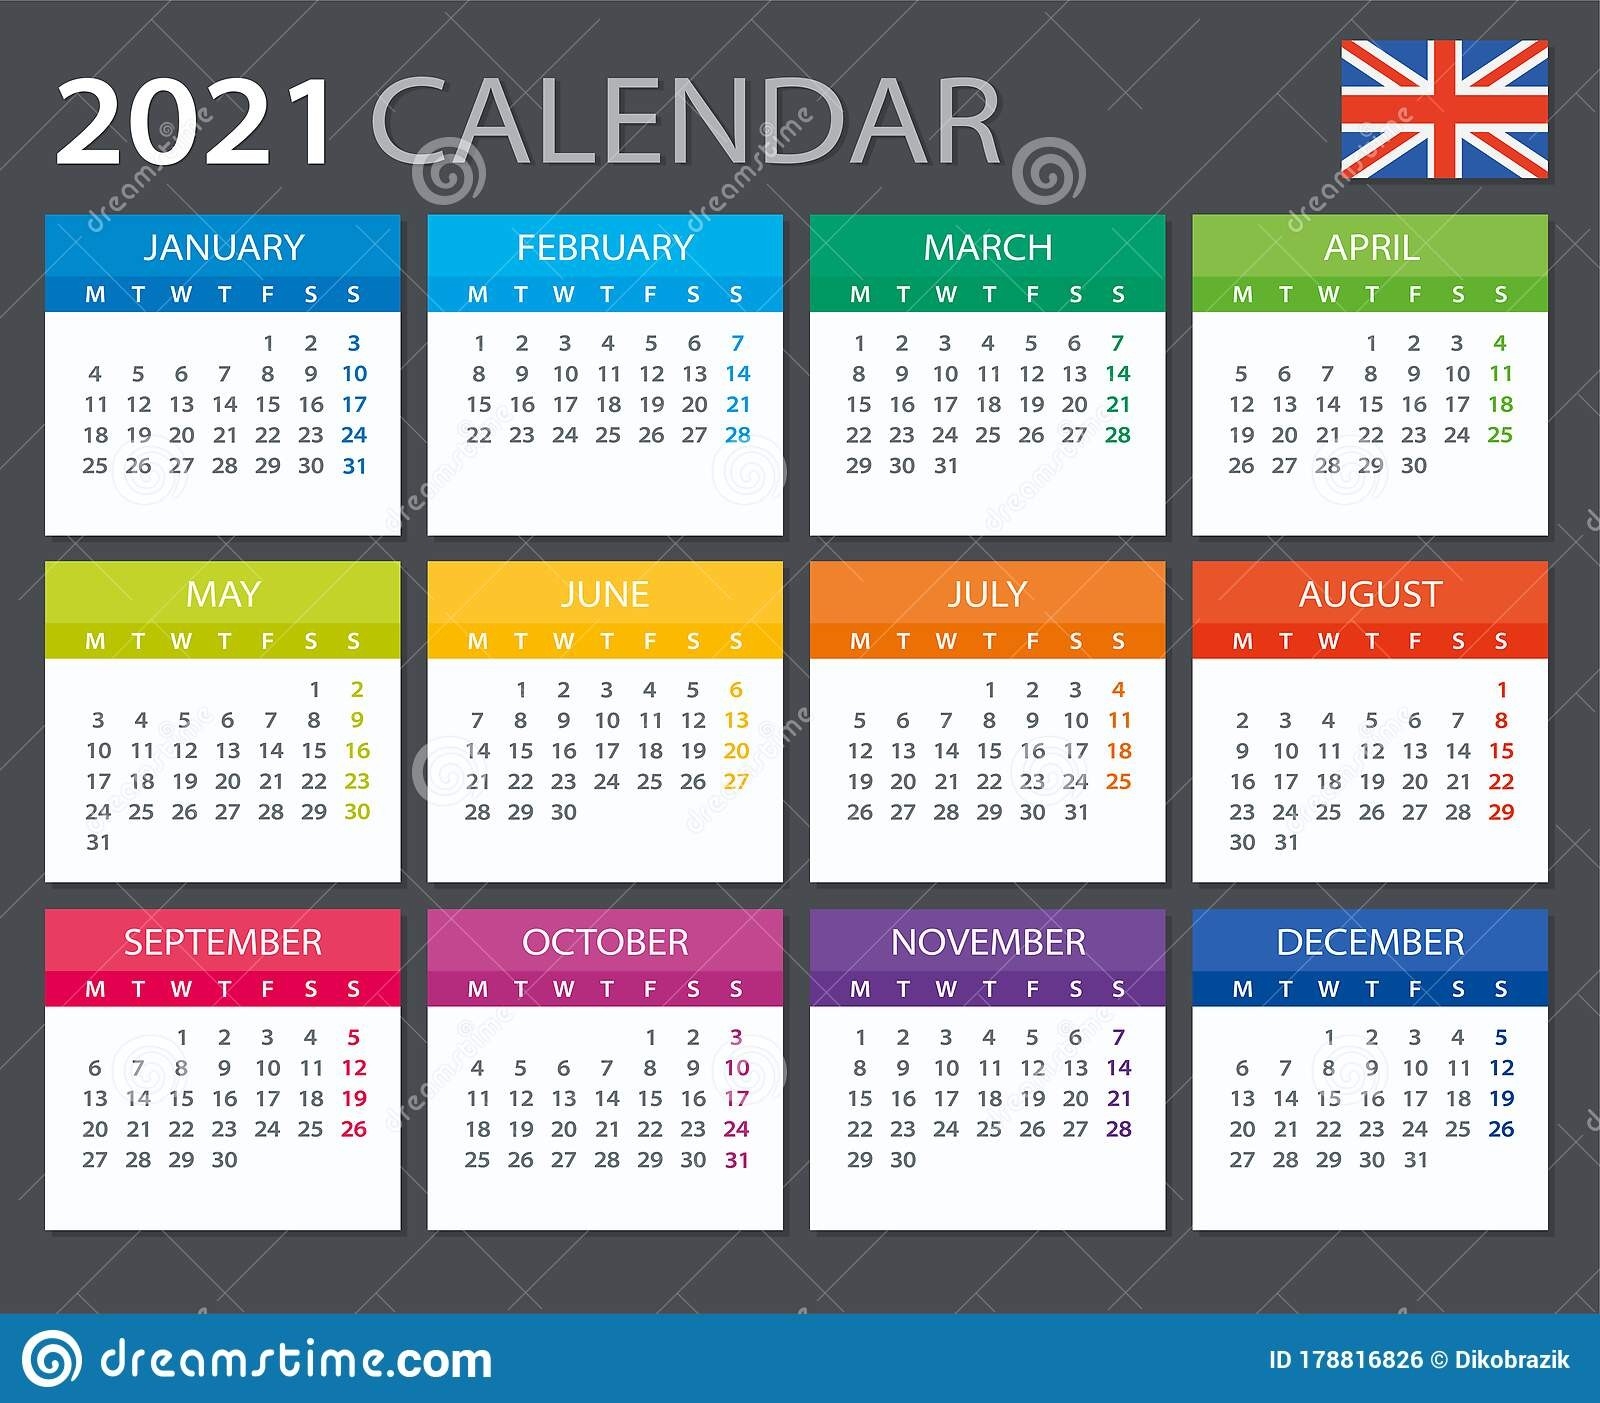 2021 Calendar - Vector Illustration. European Version Stock-European Calendar 2021